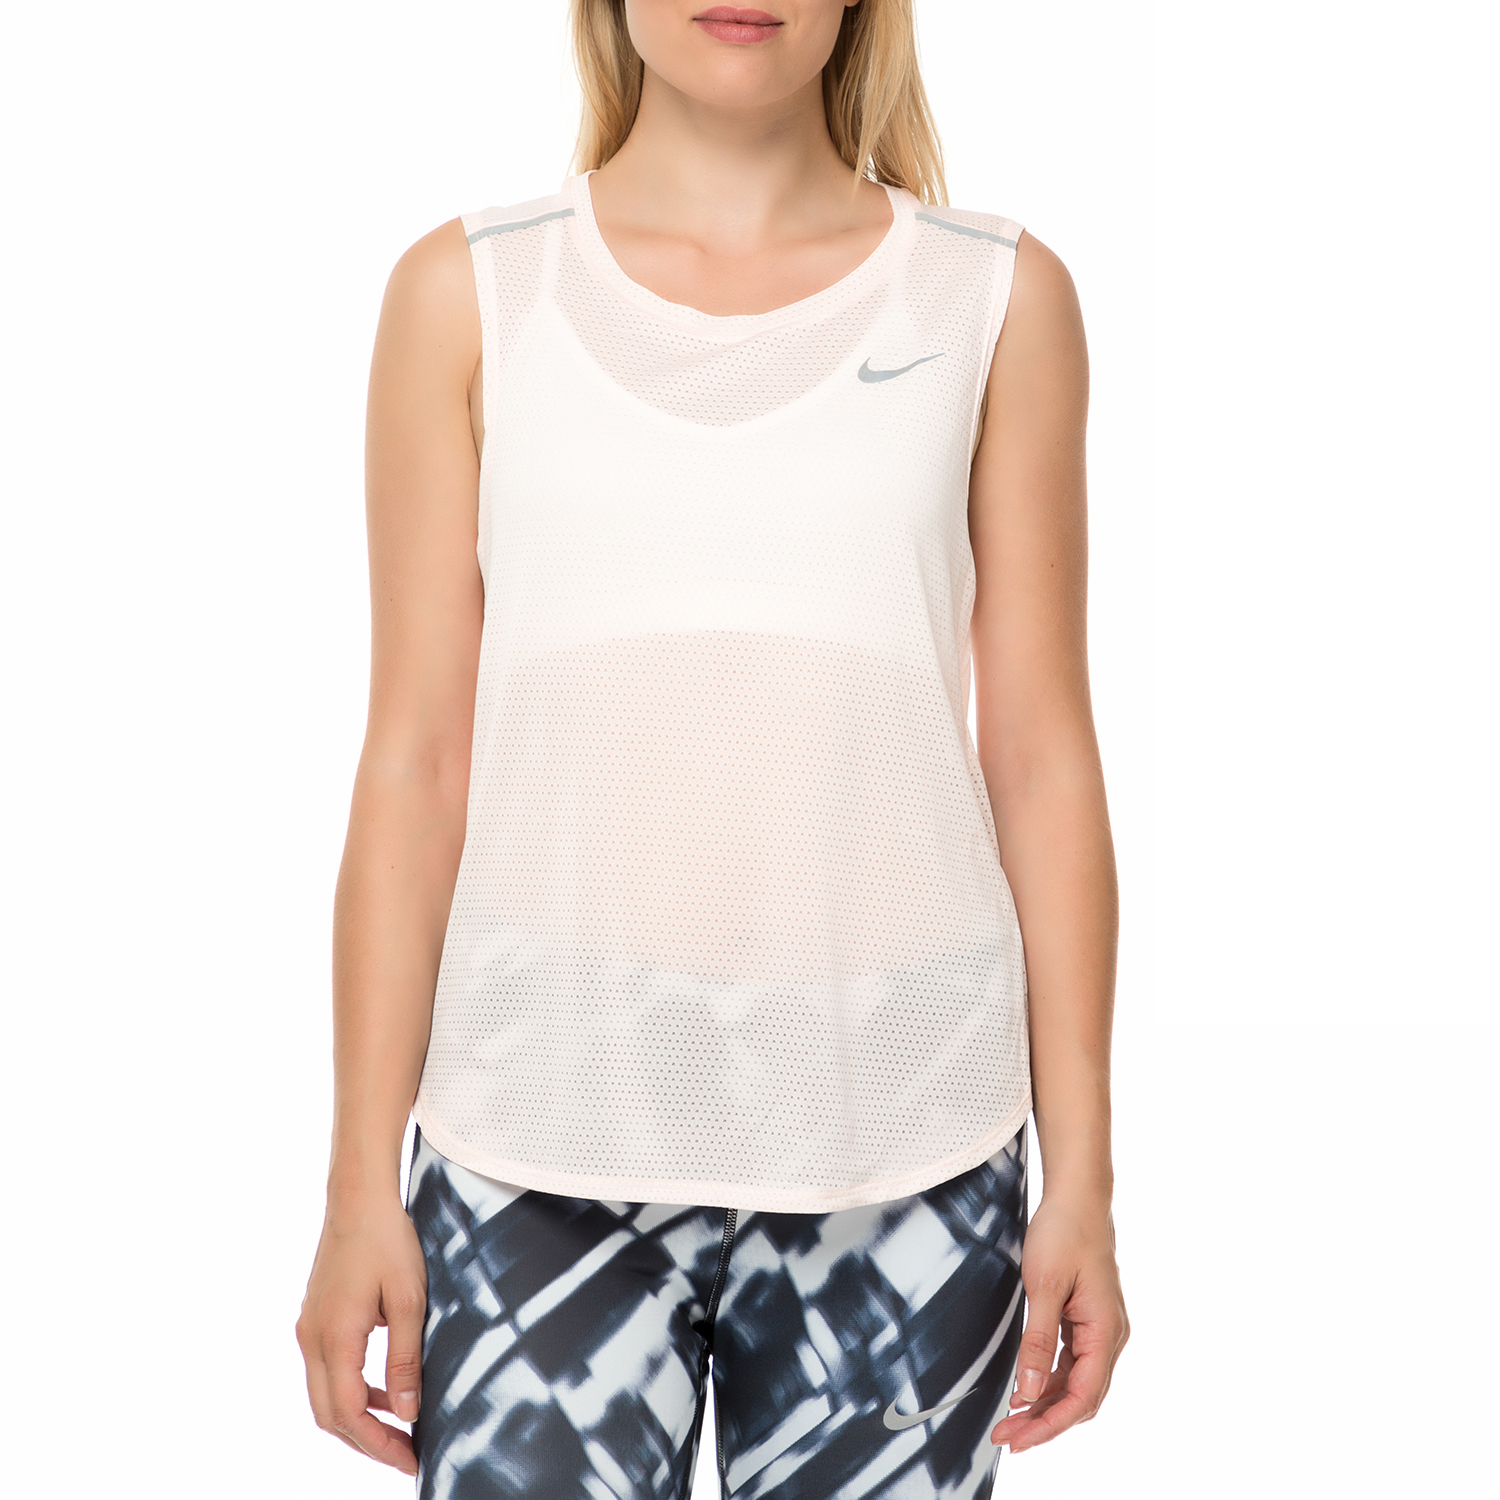 NIKE - Γυναικείο αθλητικό φανελάκι Nike Breathe λευκό Γυναικεία/Ρούχα/Αθλητικά/T-shirt-Τοπ